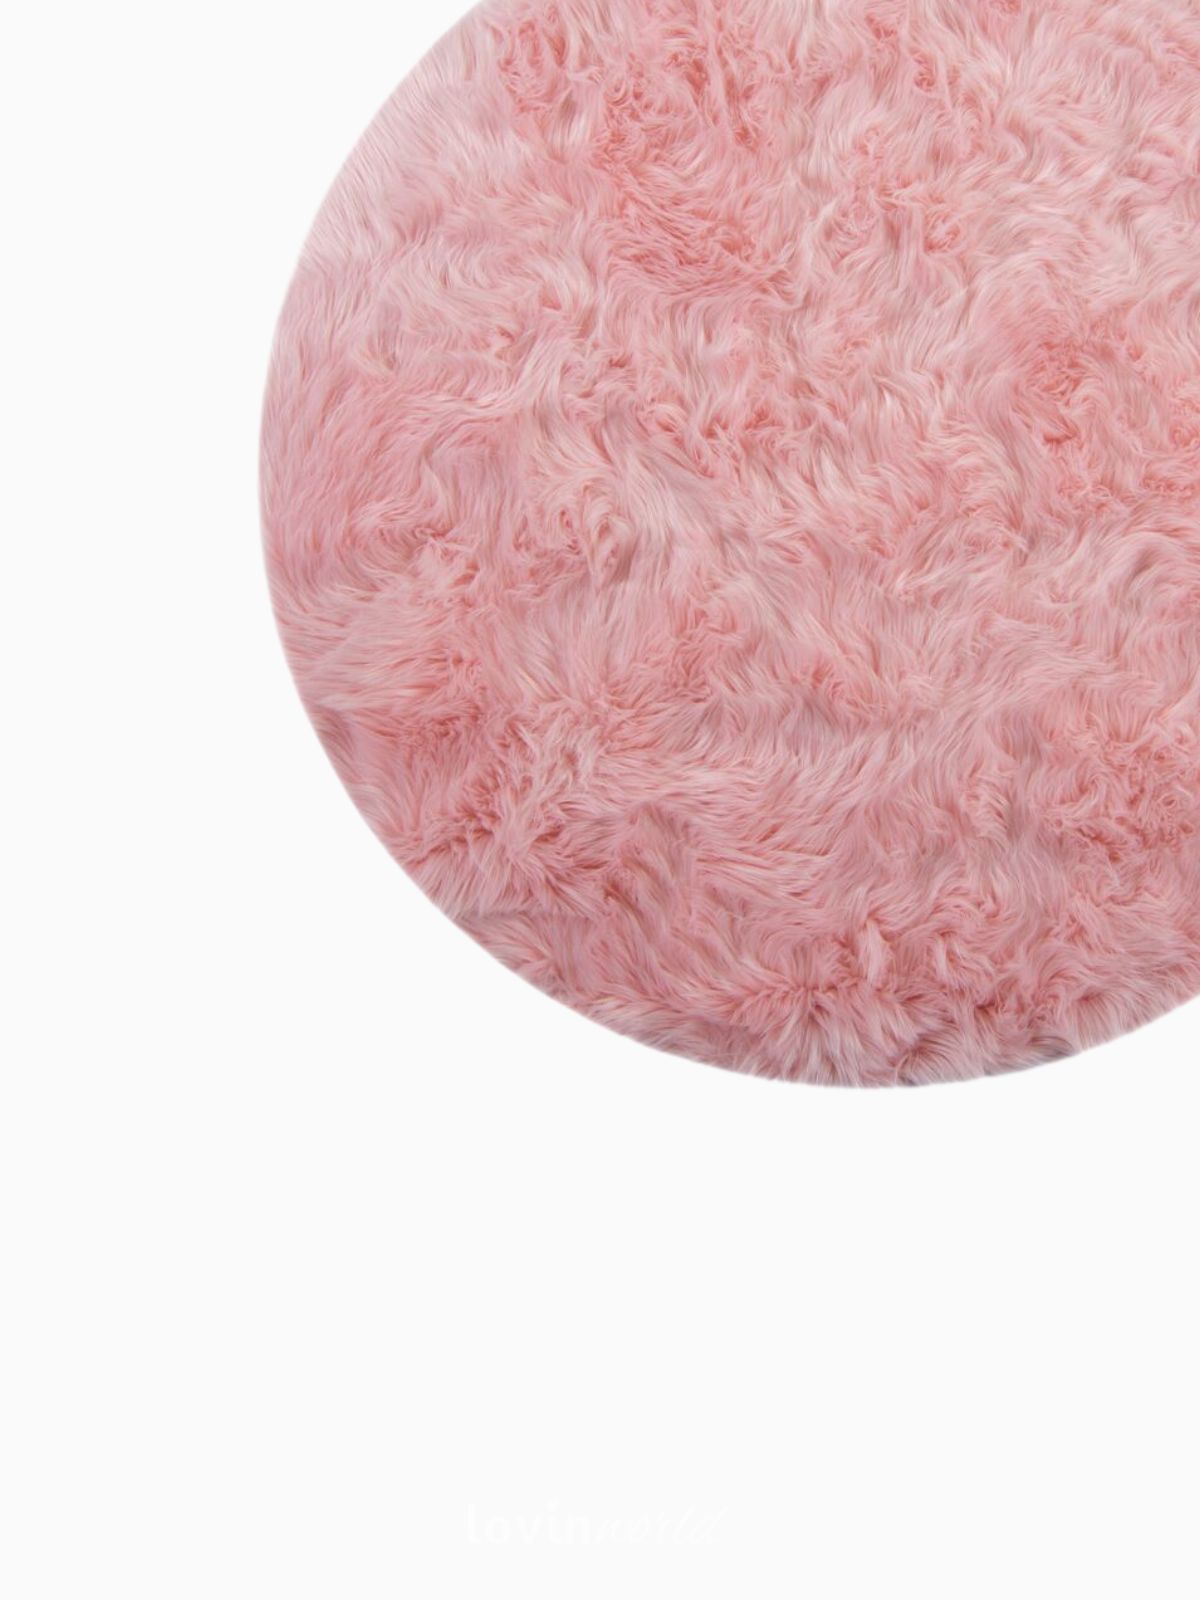 Tappeto rotondo shaggy Sheepskin in poliestere, colore rosa 120x120 cm.-4